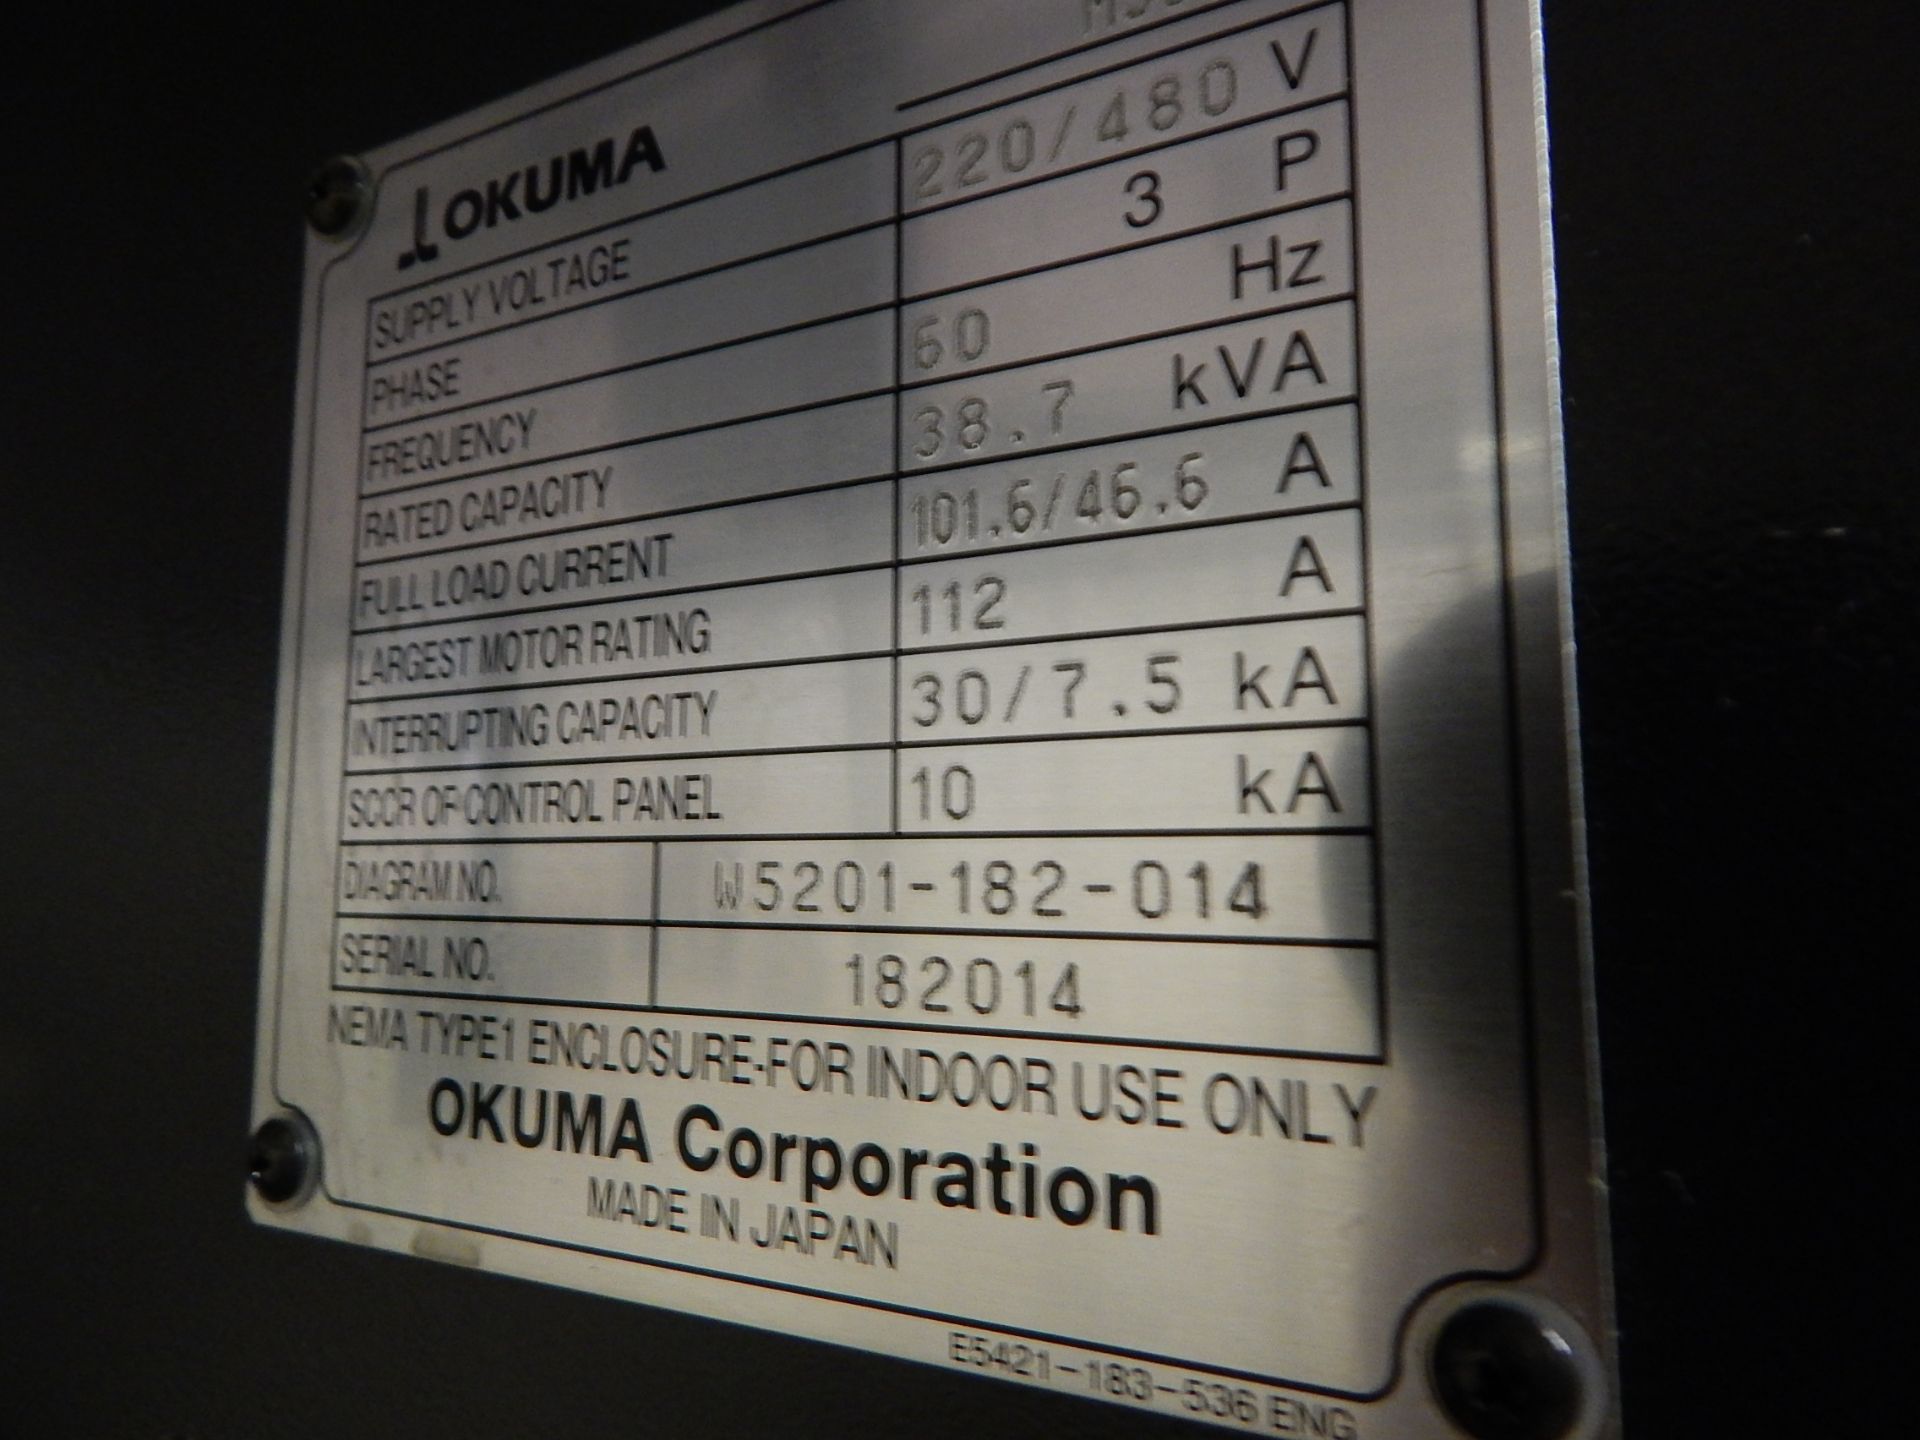 Okuma Model Genos M560V CNC Vertical Machining Center, s/n 182014, New 2014, Okuma OSP-P300M CNC - Bild 6 aus 16